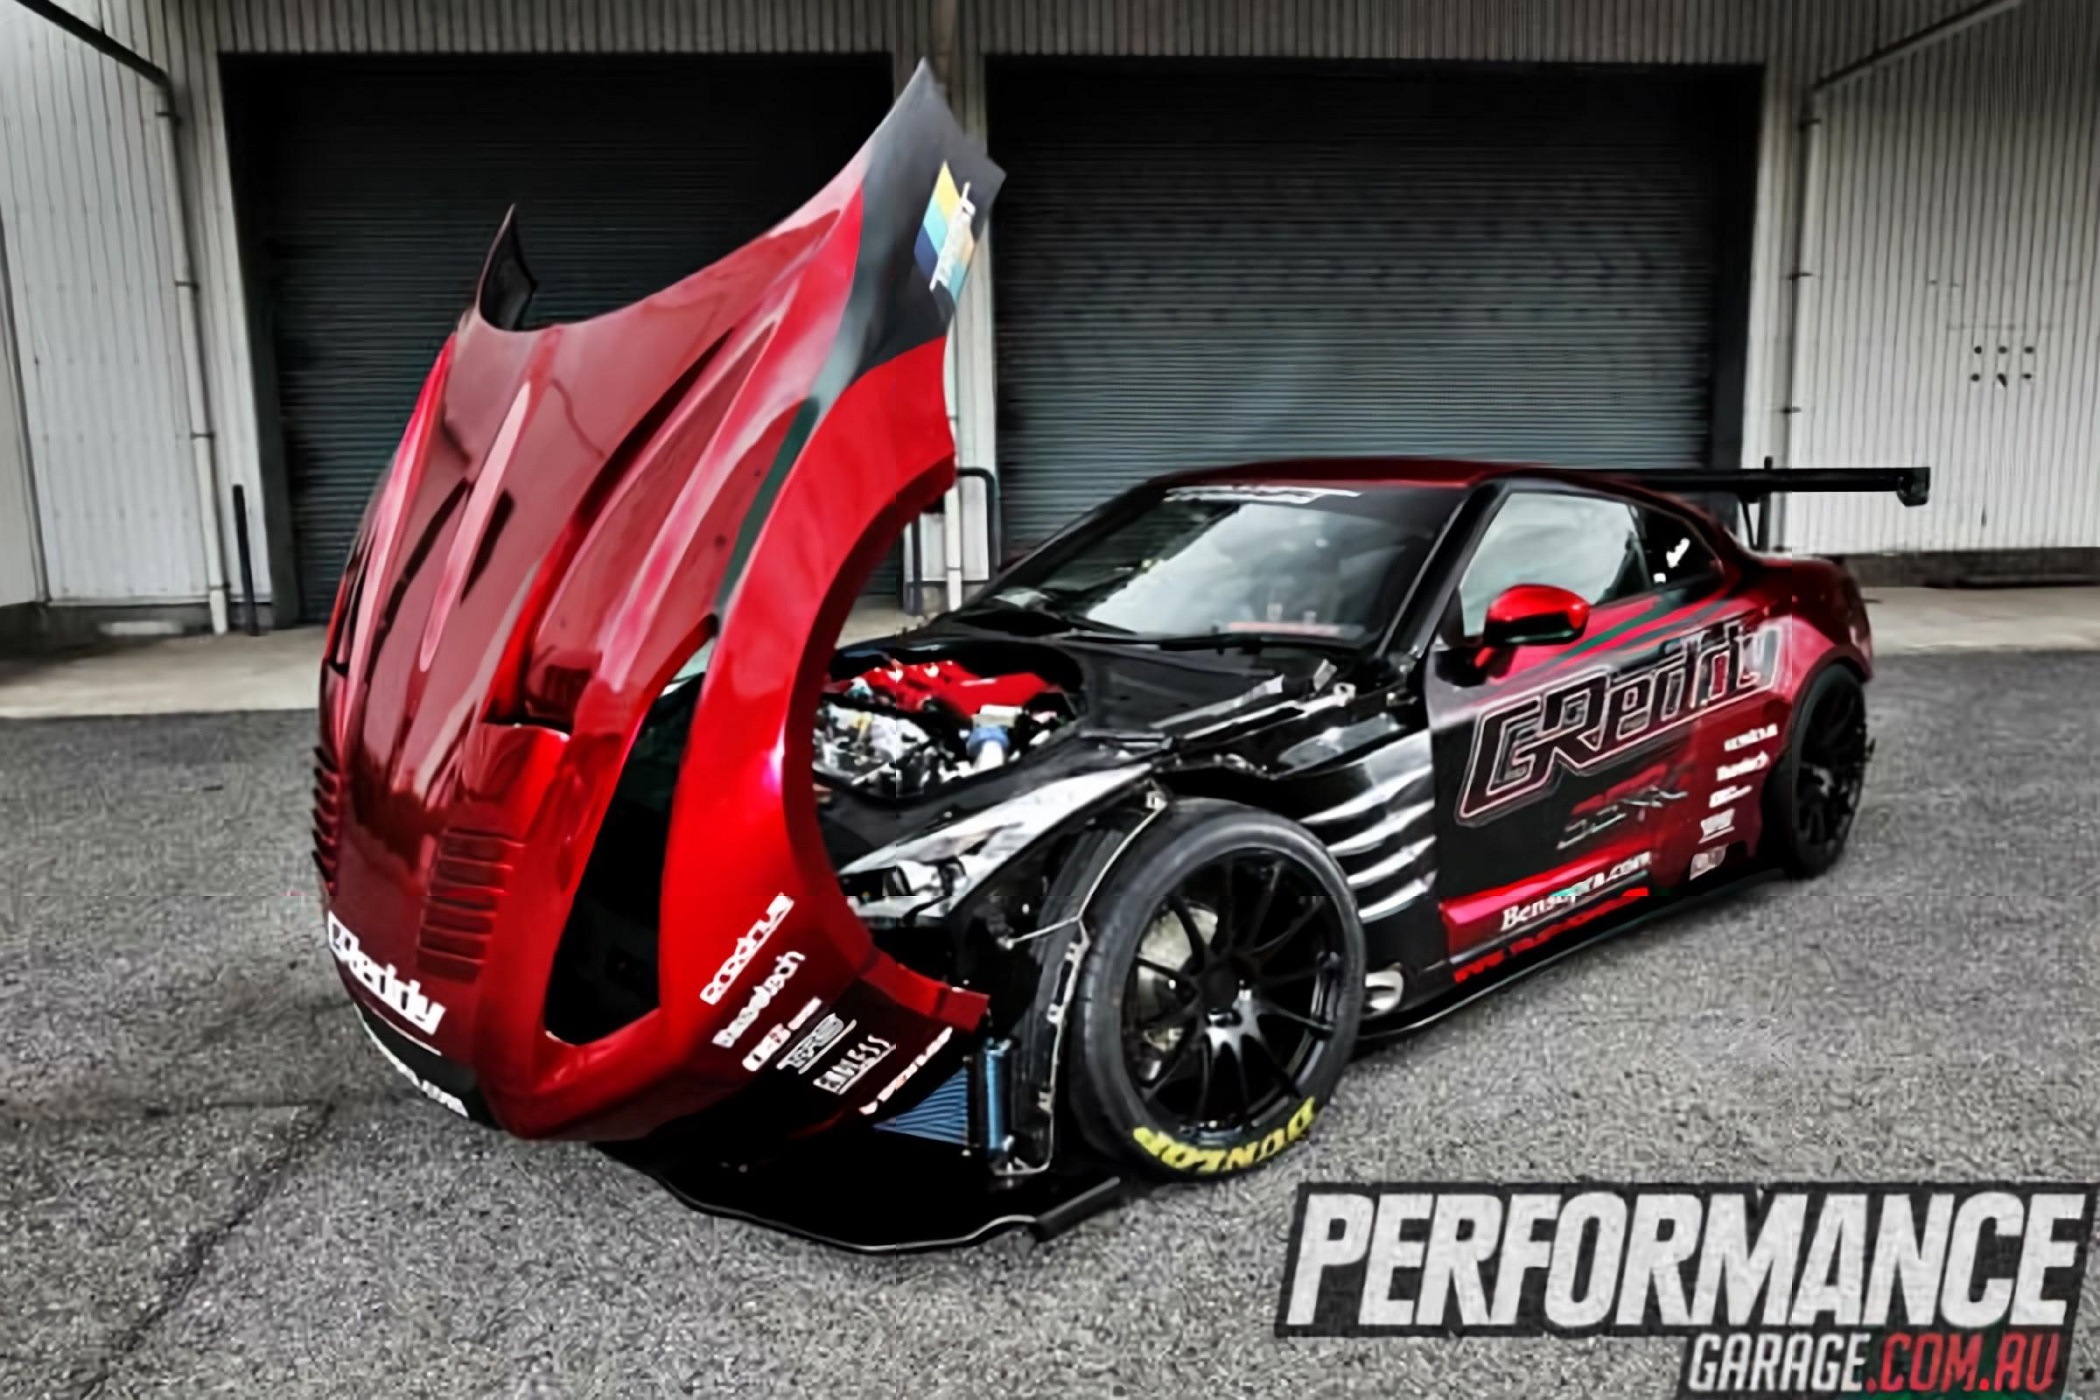 Japan's Craziest GT-R